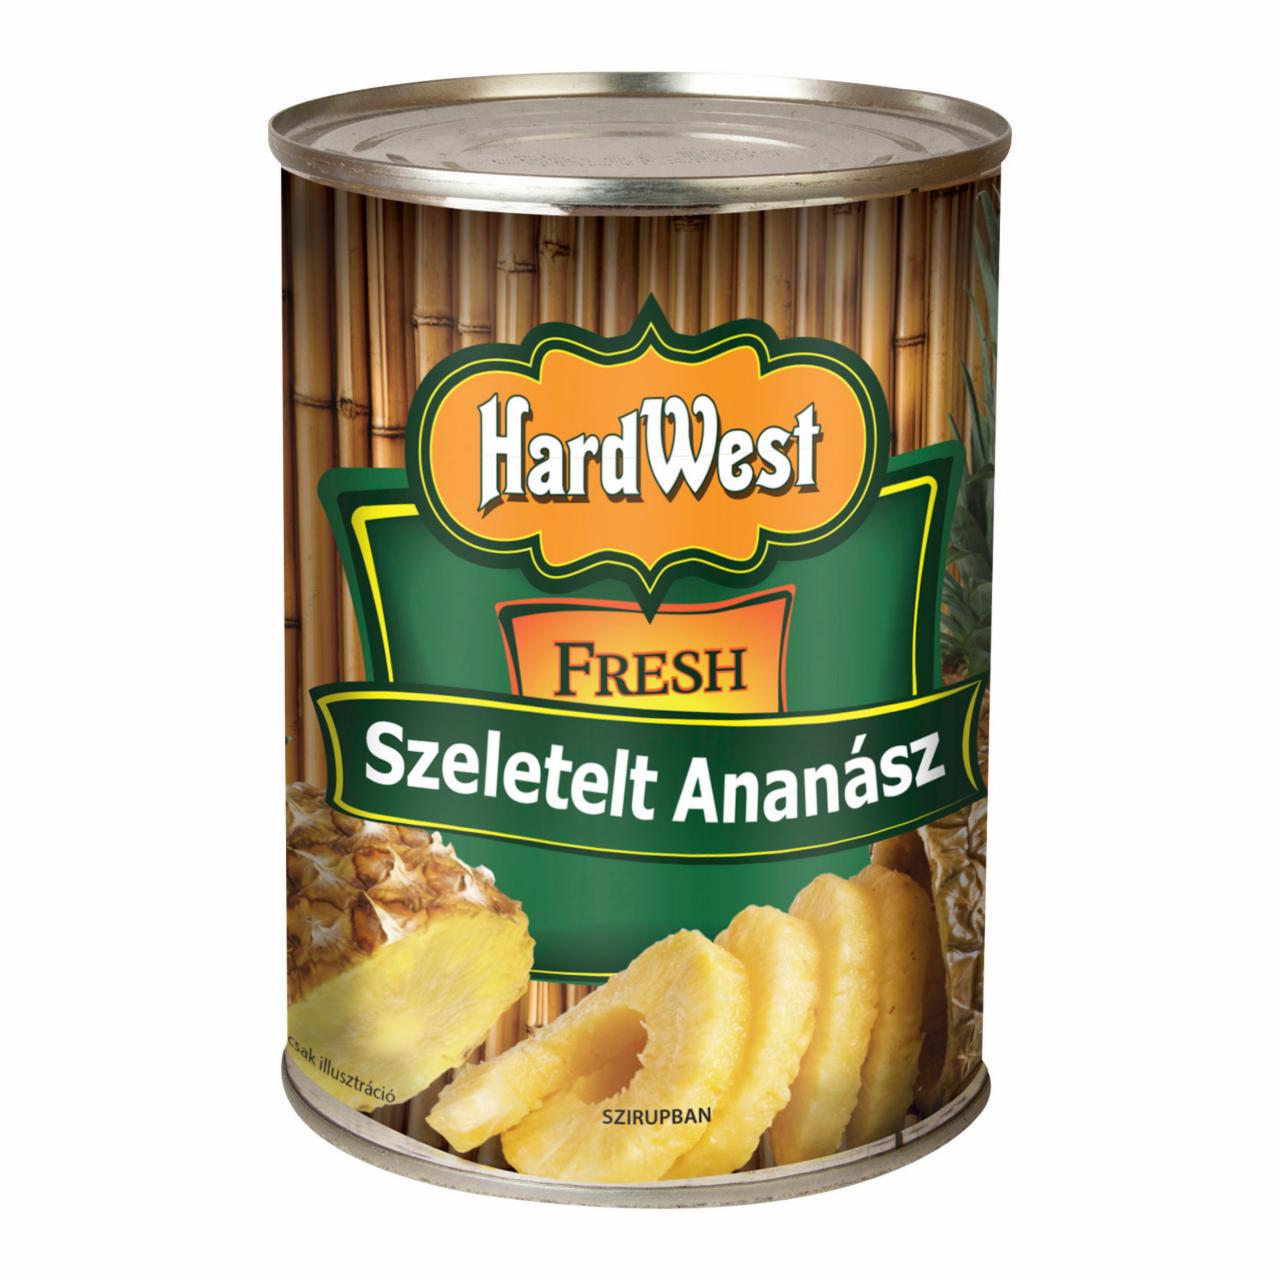 Képek - HARDWEST ananász szeletelt 565 g